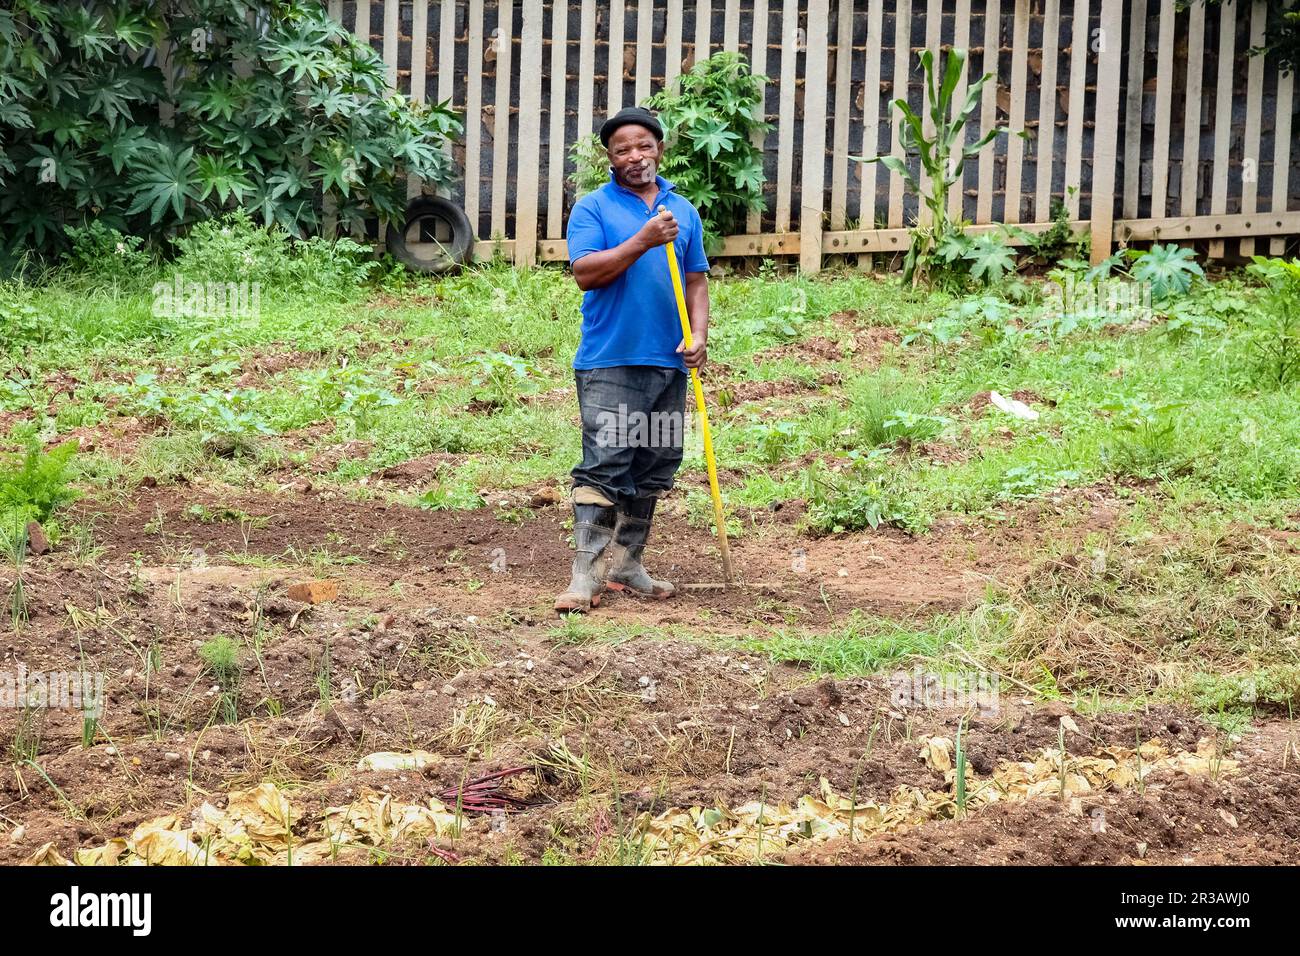 Afrikanischer Mann, der in einem kleinen städtischen Gemüsegarten arbeitet Stockfoto